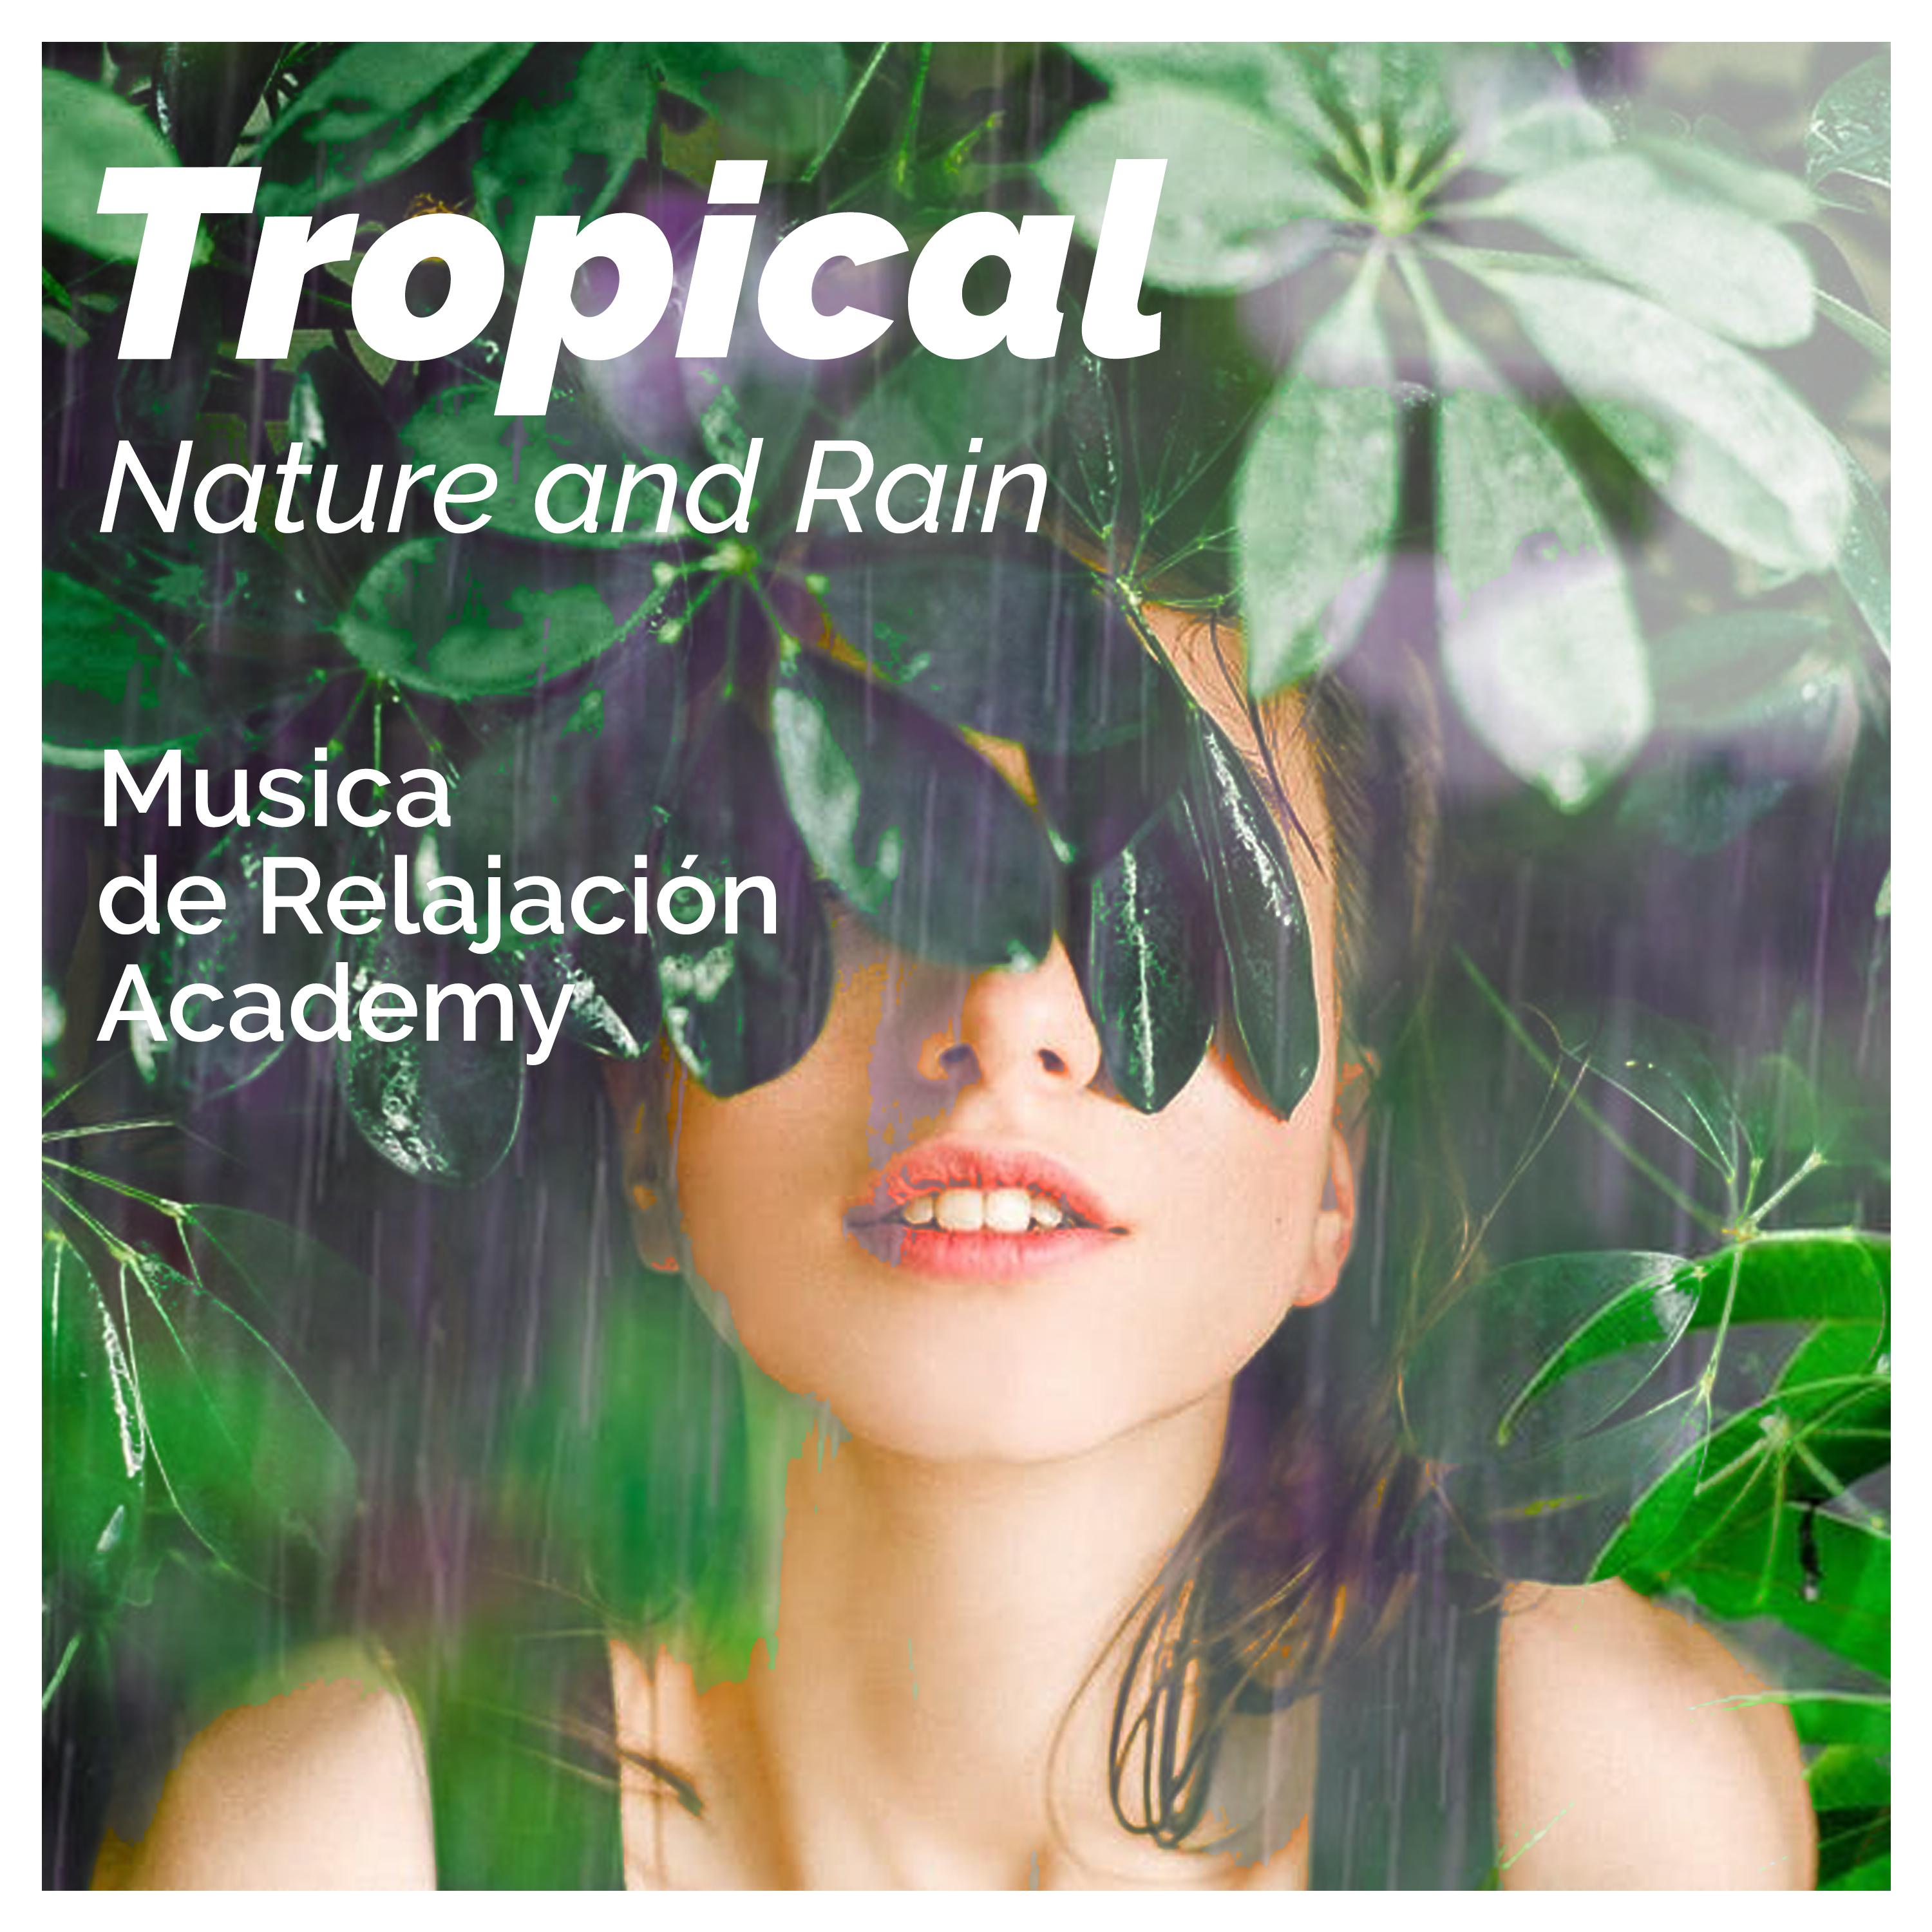 Tropical Nature and Rain